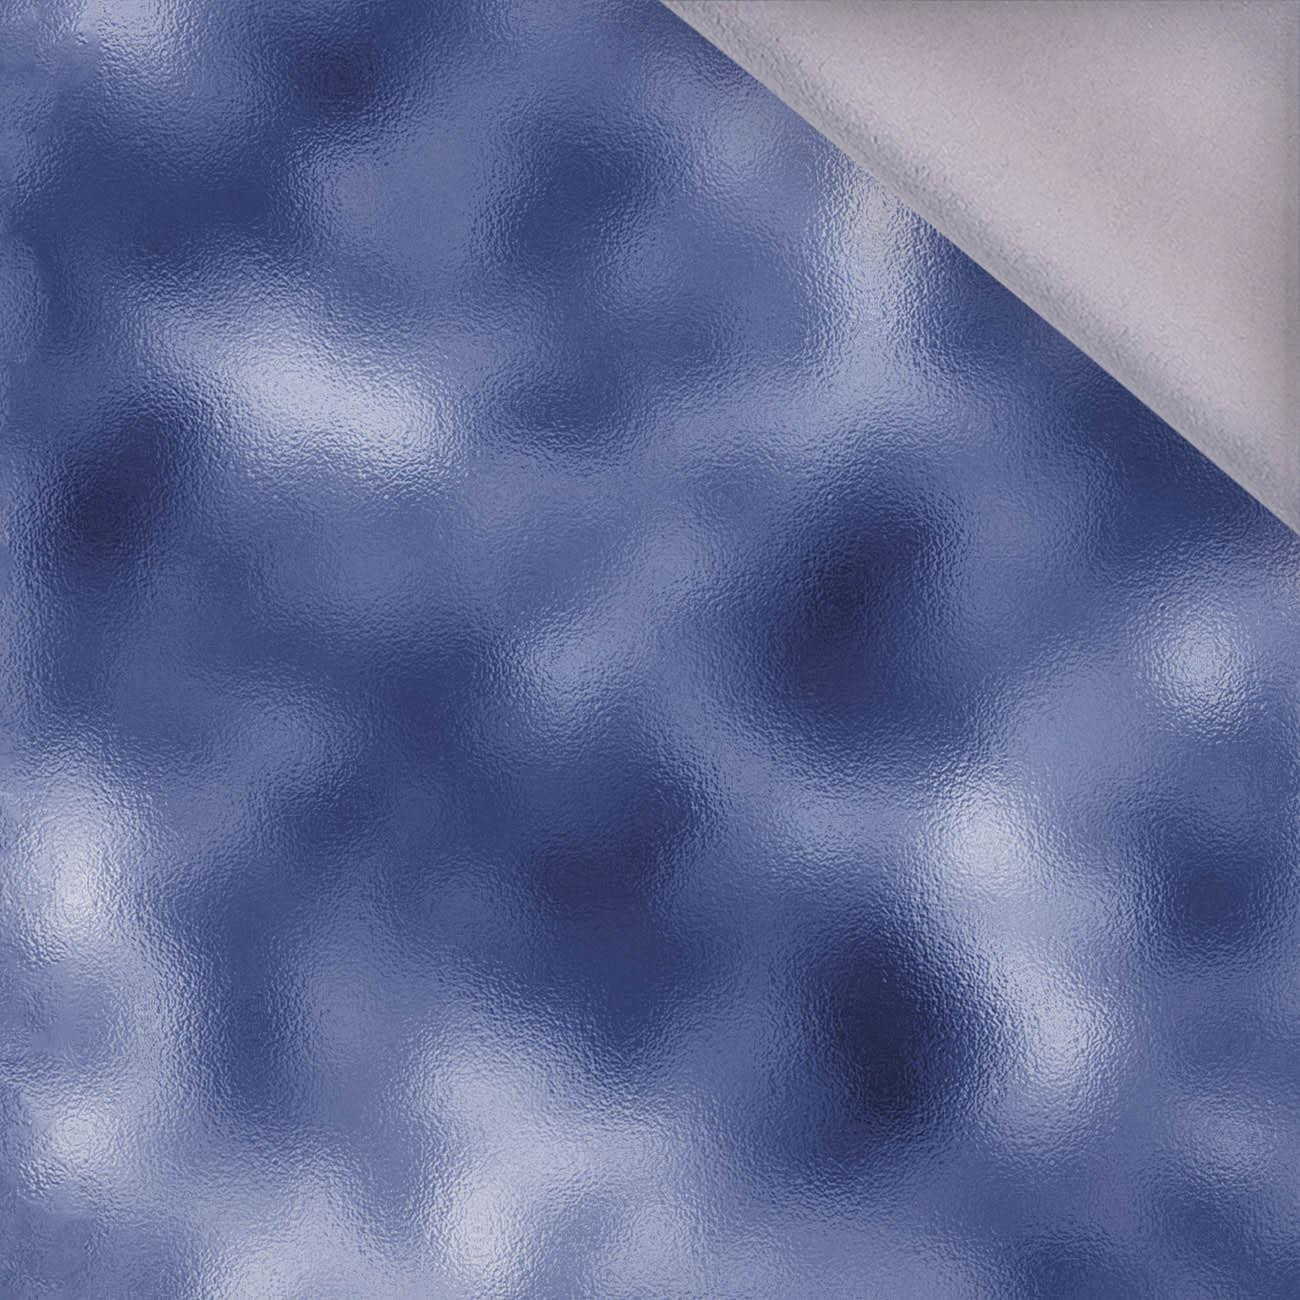 MRÓZ WZ. 3 / niebieski (MALOWANE NA SZKLE) - softshell